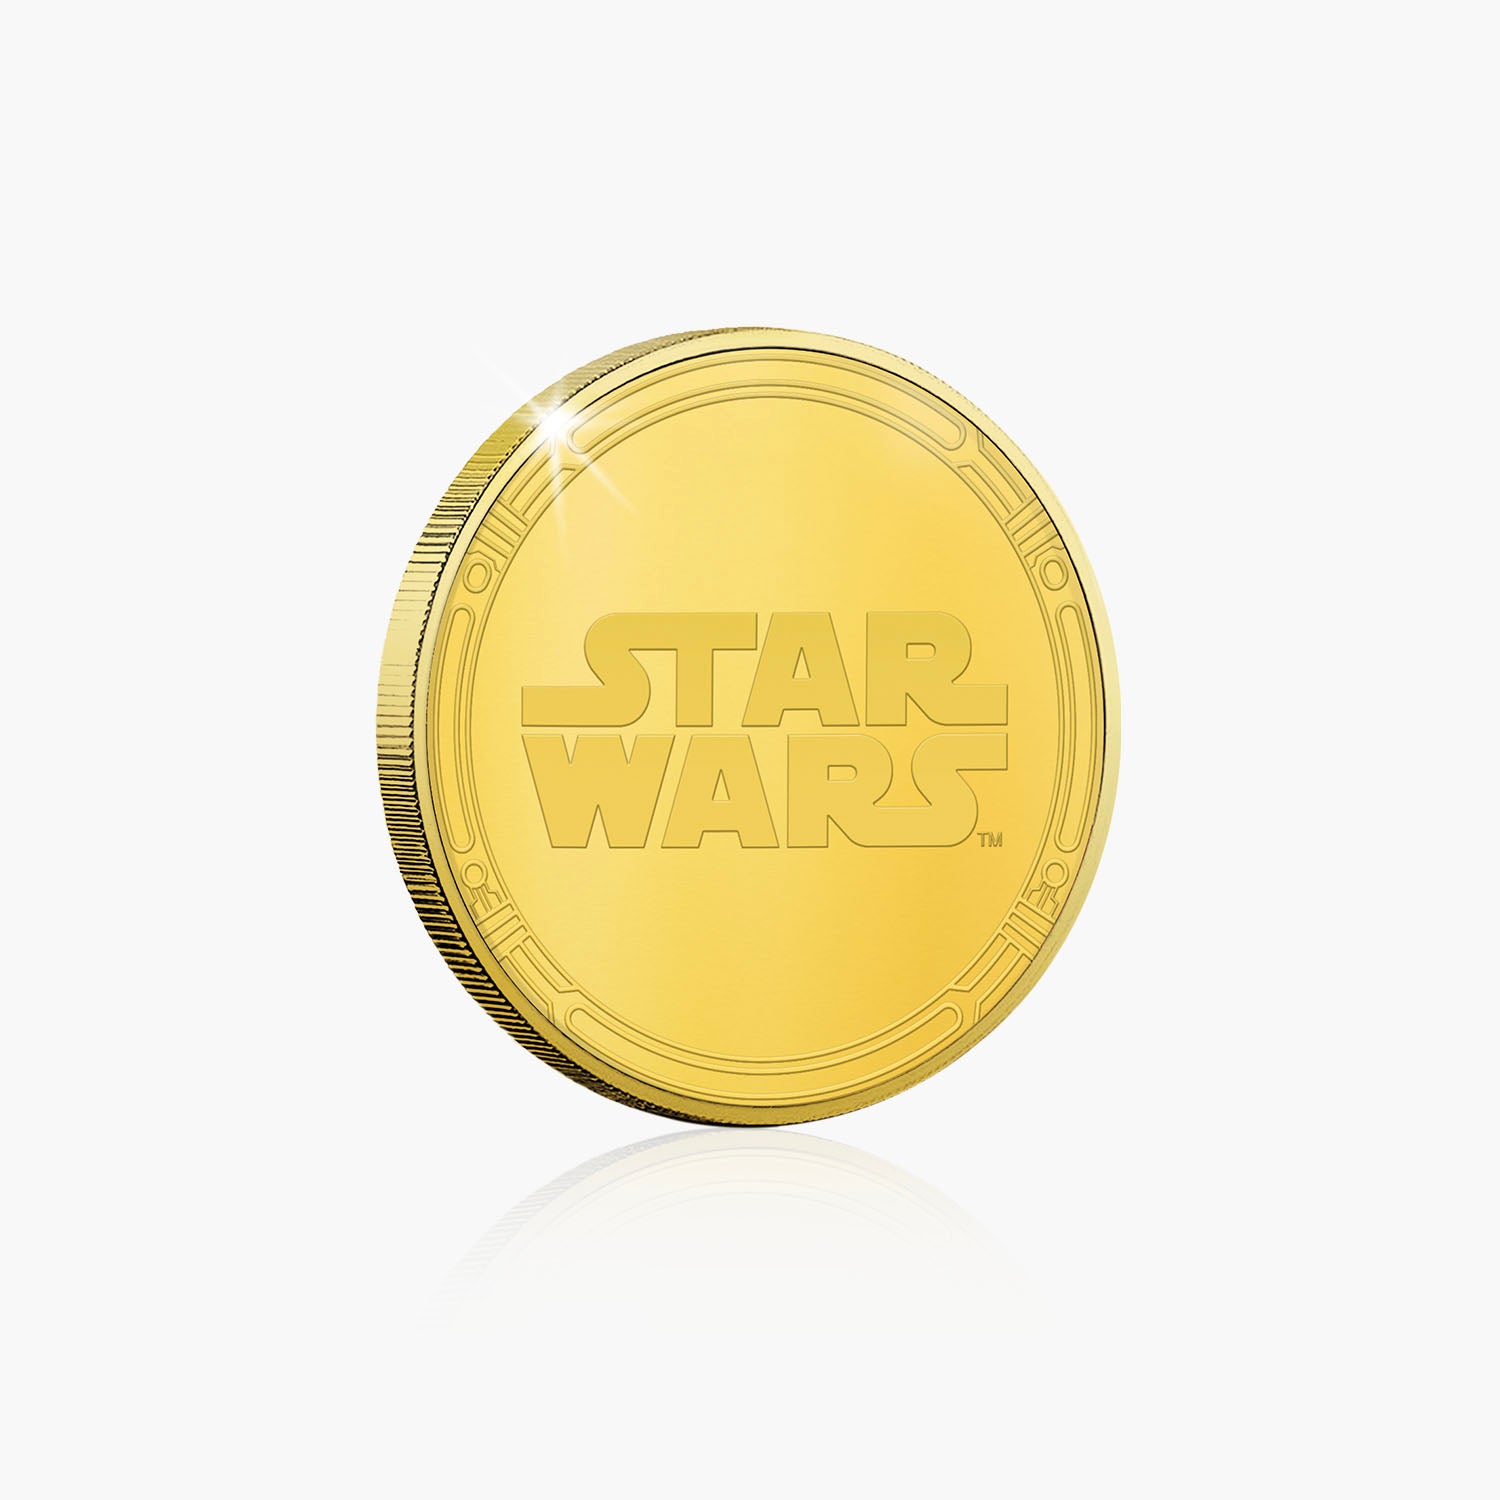 The Last Jedi Gold Plated Commemorative